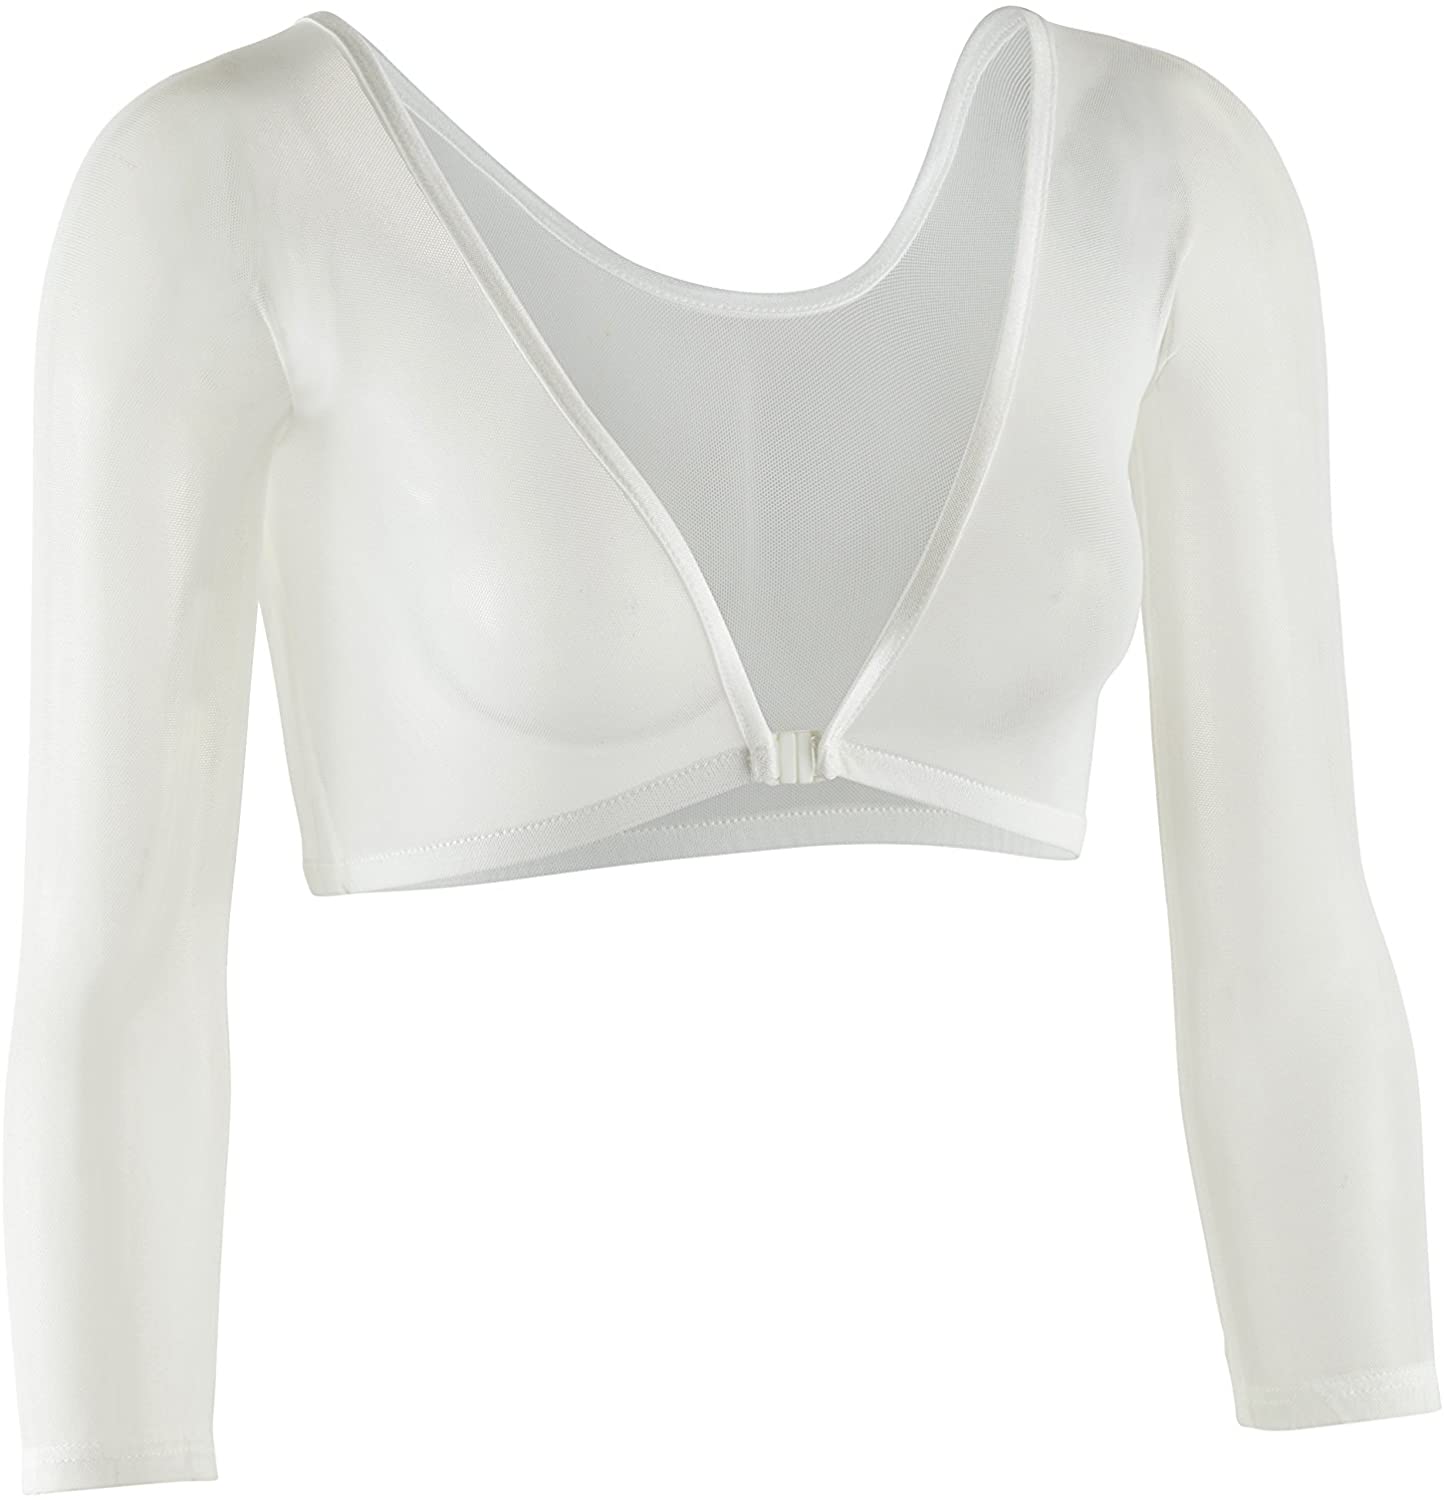 Sleevey Wonders Women's Basic 3/4 Length Slip-on Mesh Sleeves | eBay